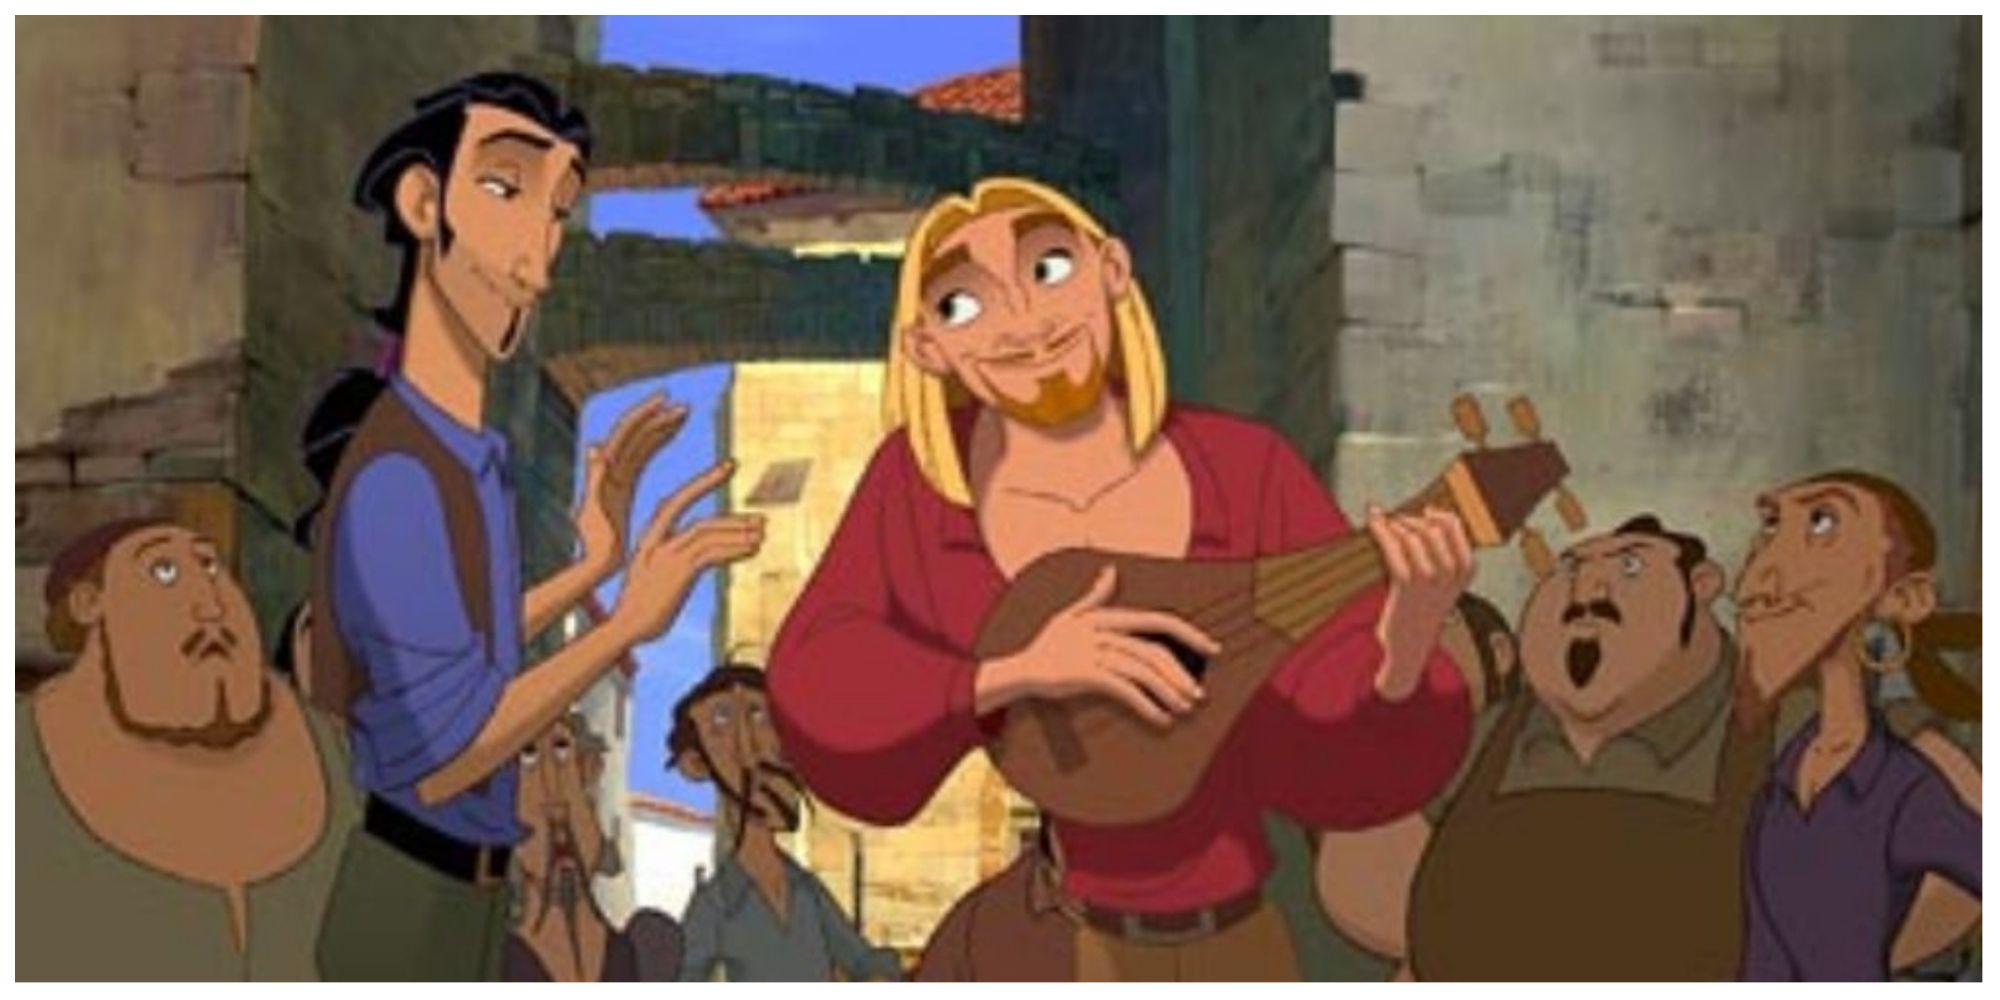 Tulio and Miguel in DreamWorks' The Road to El Dorado.